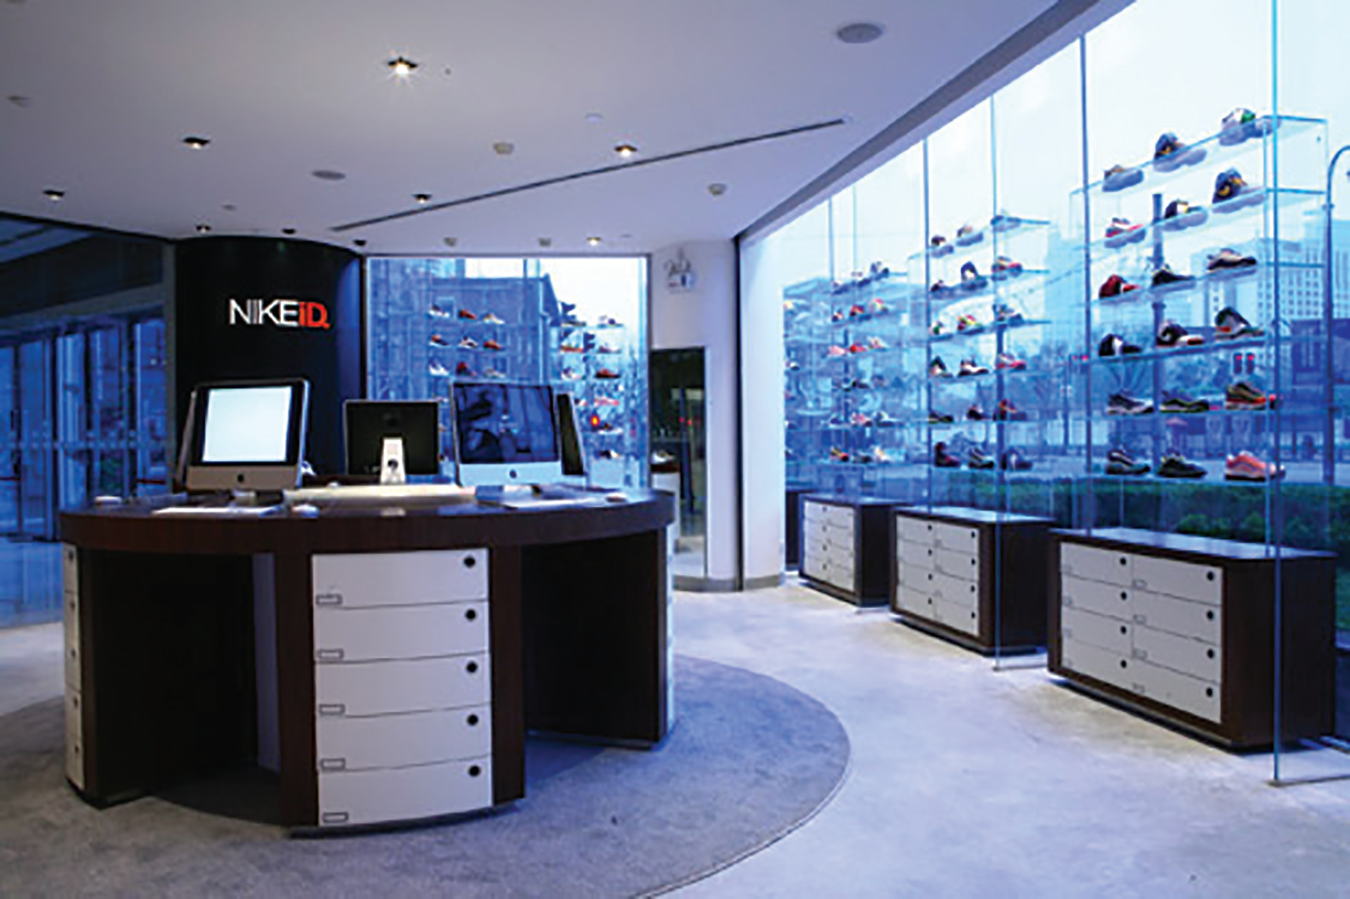 Una imagen del interior de una tienda NikeID mostrando zapatos en las repisas por ventanas de vidrio con una vista de muchos edificios altos.